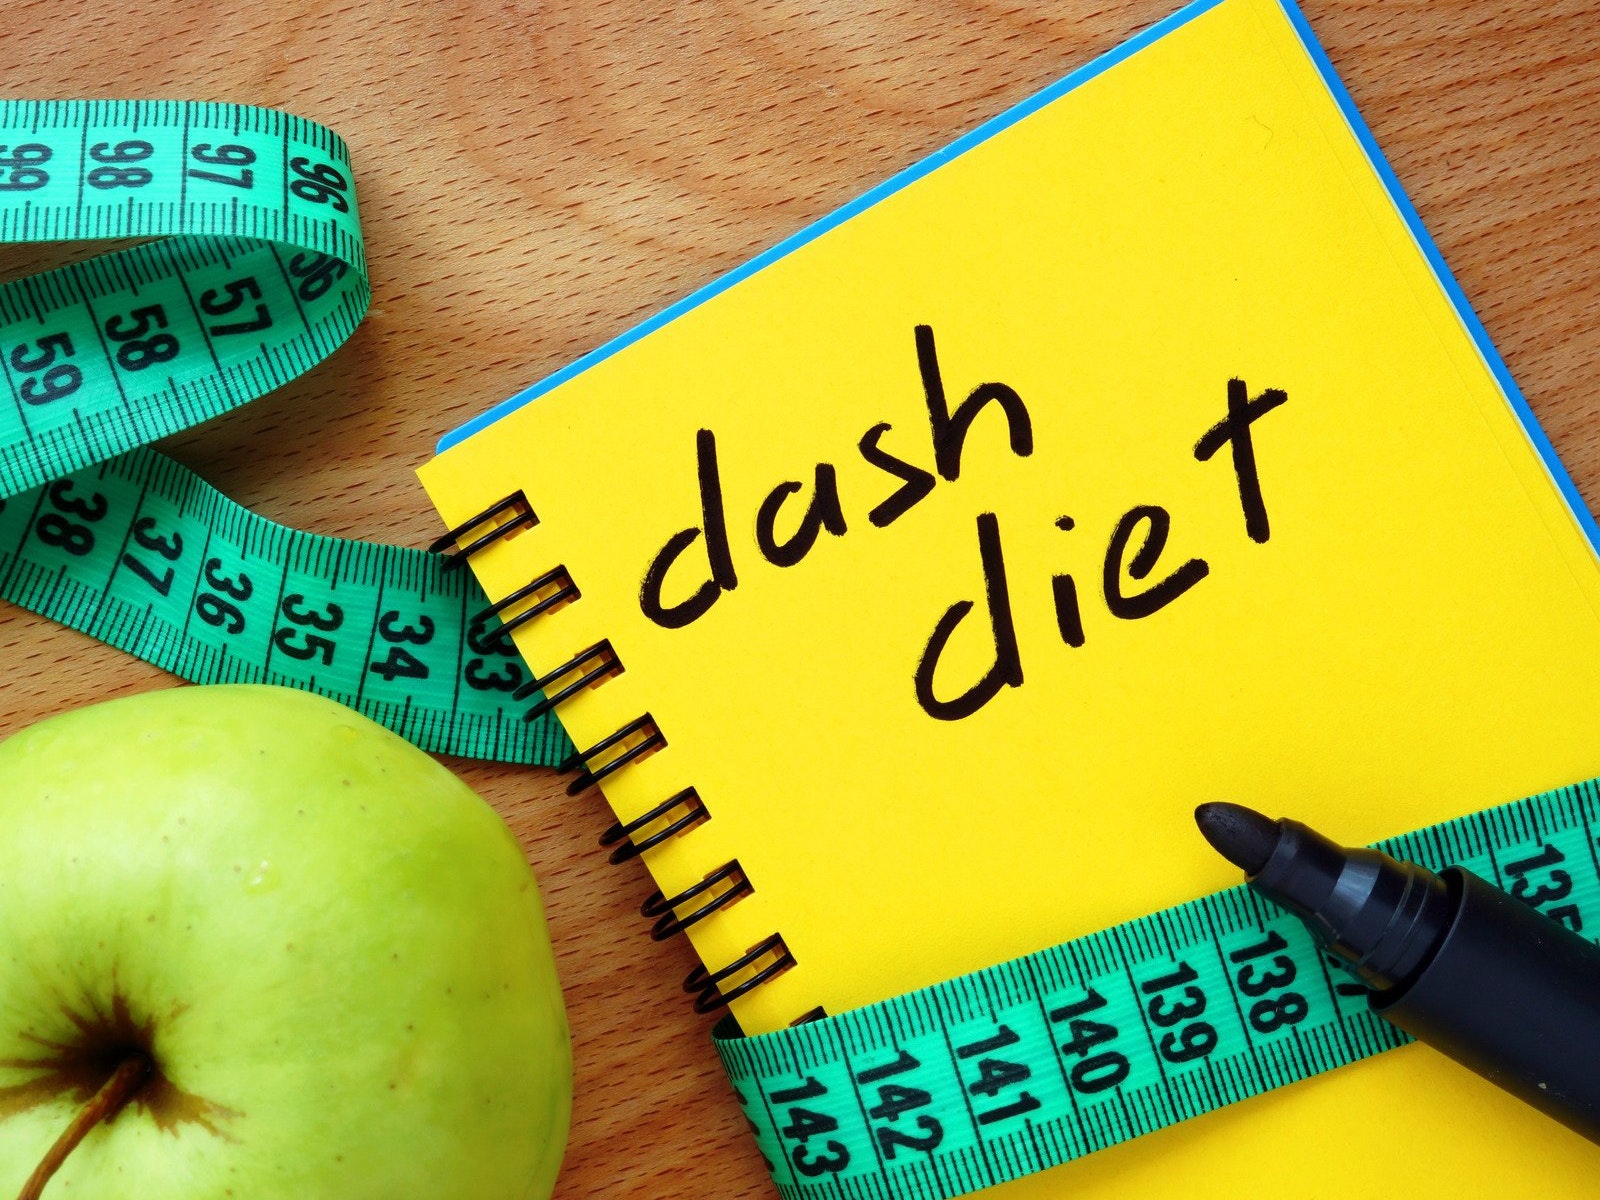 Έρευνα έδειξε ότι η δίαιτα DASH μειώνει το ουρικό οξύ – Όσα πρέπει να γνωρίζετε